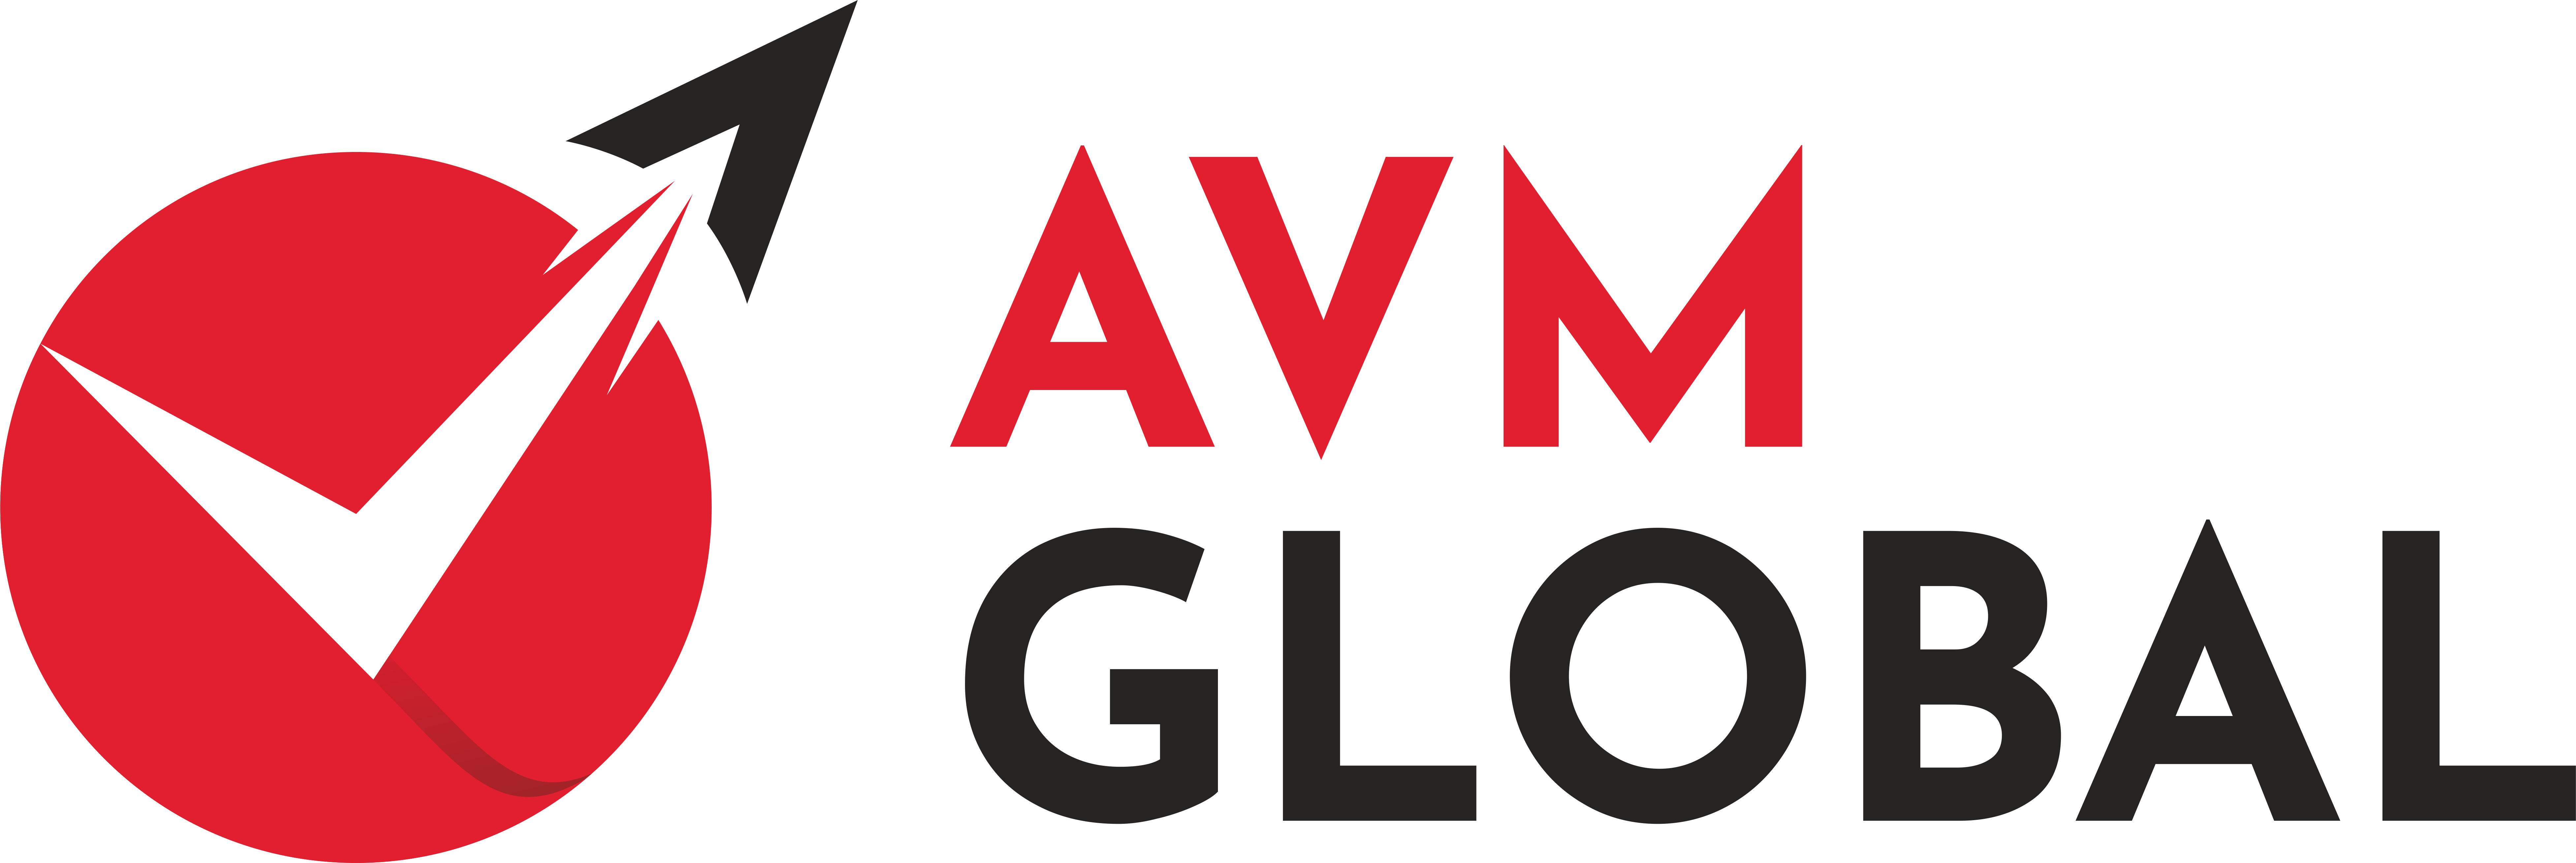 Avm Global